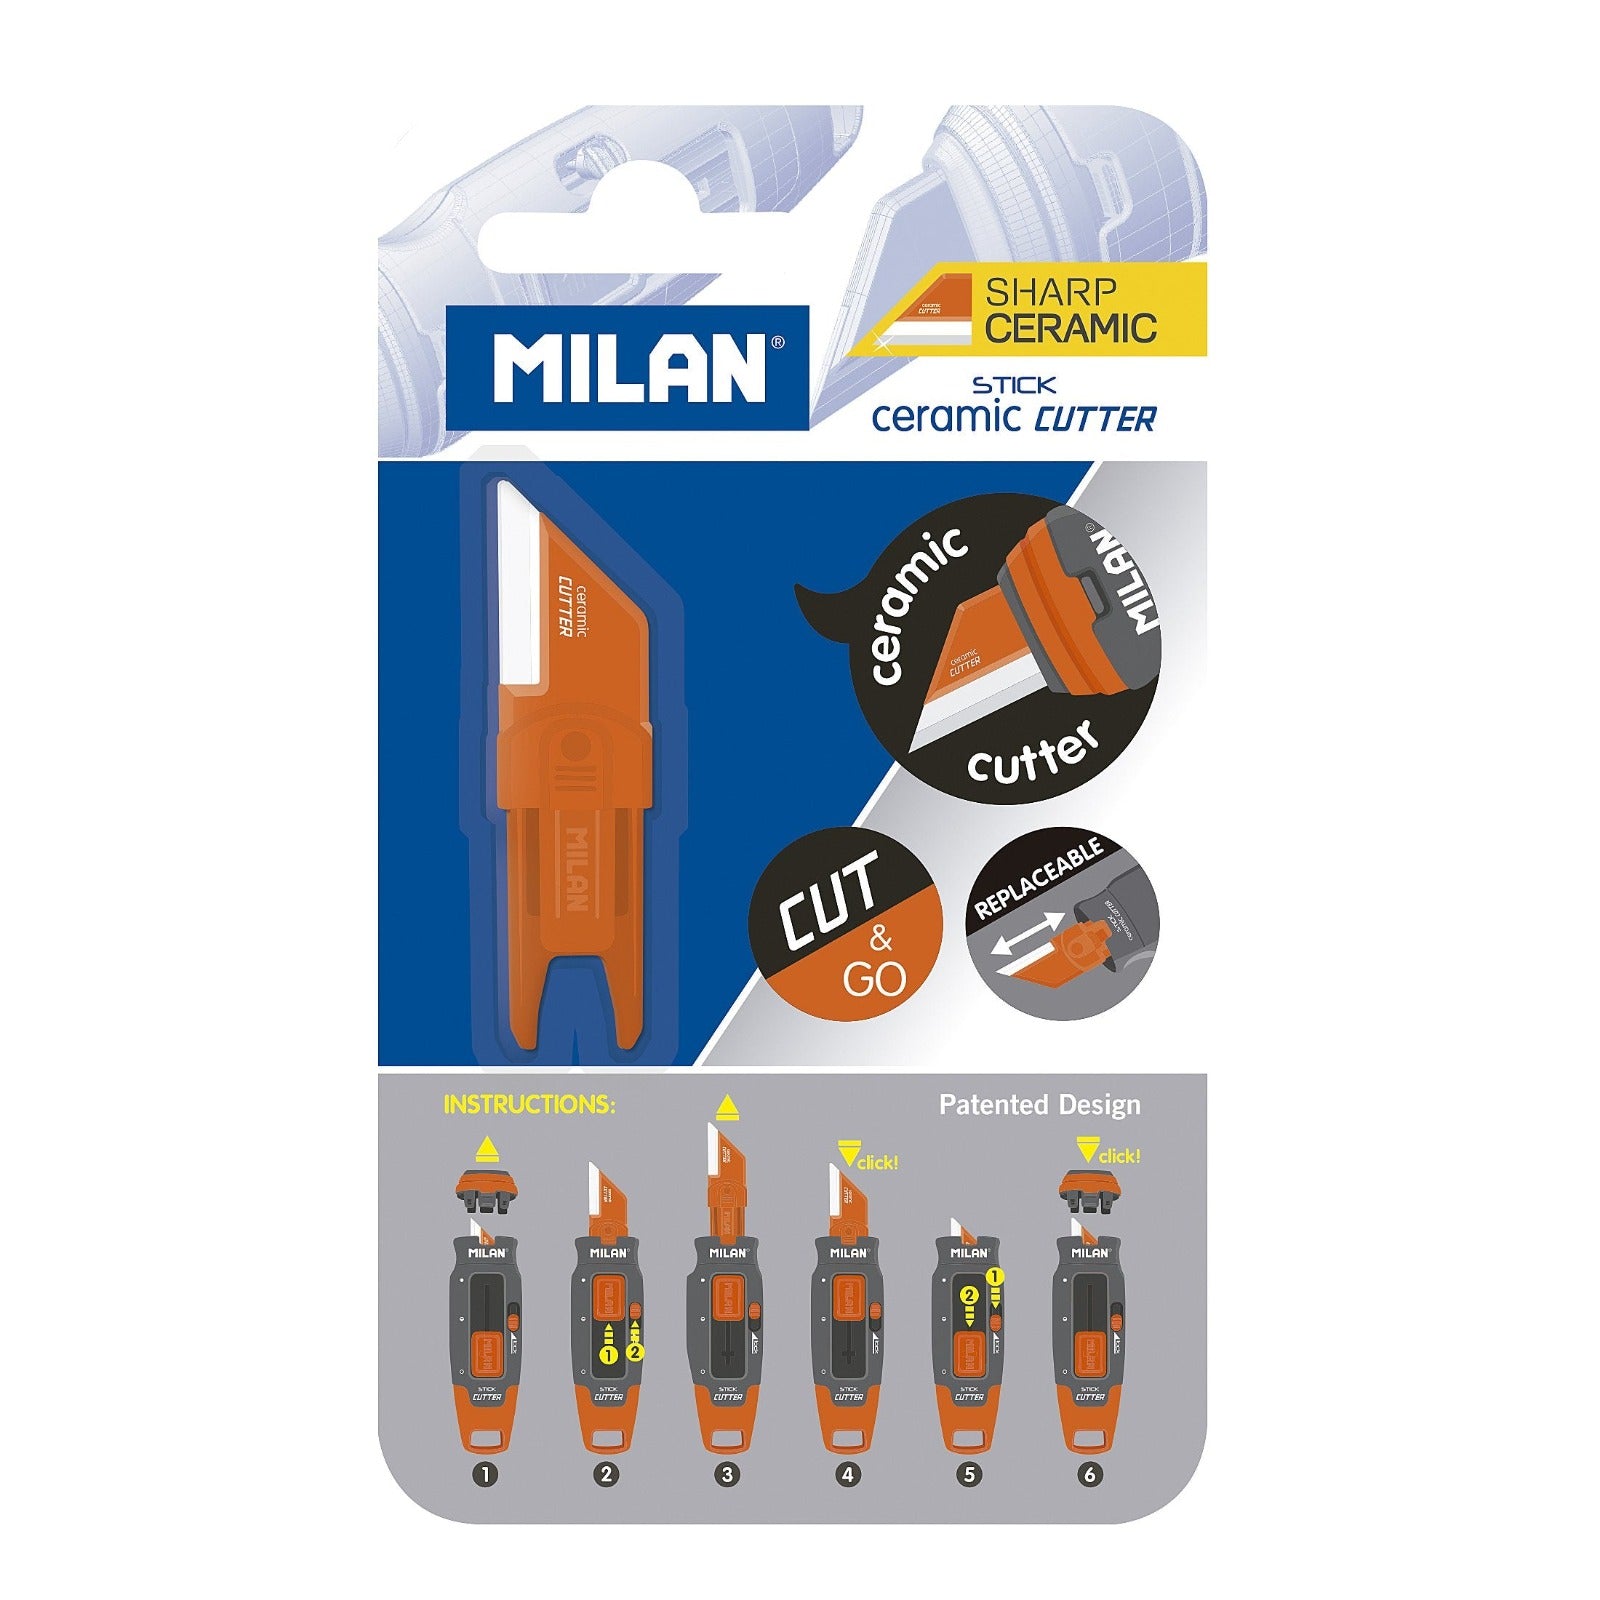 MILAN 6010112 - Cutter Pequeño Hoja Cerámica y Bloqueo de Seguridad, Edición STICK